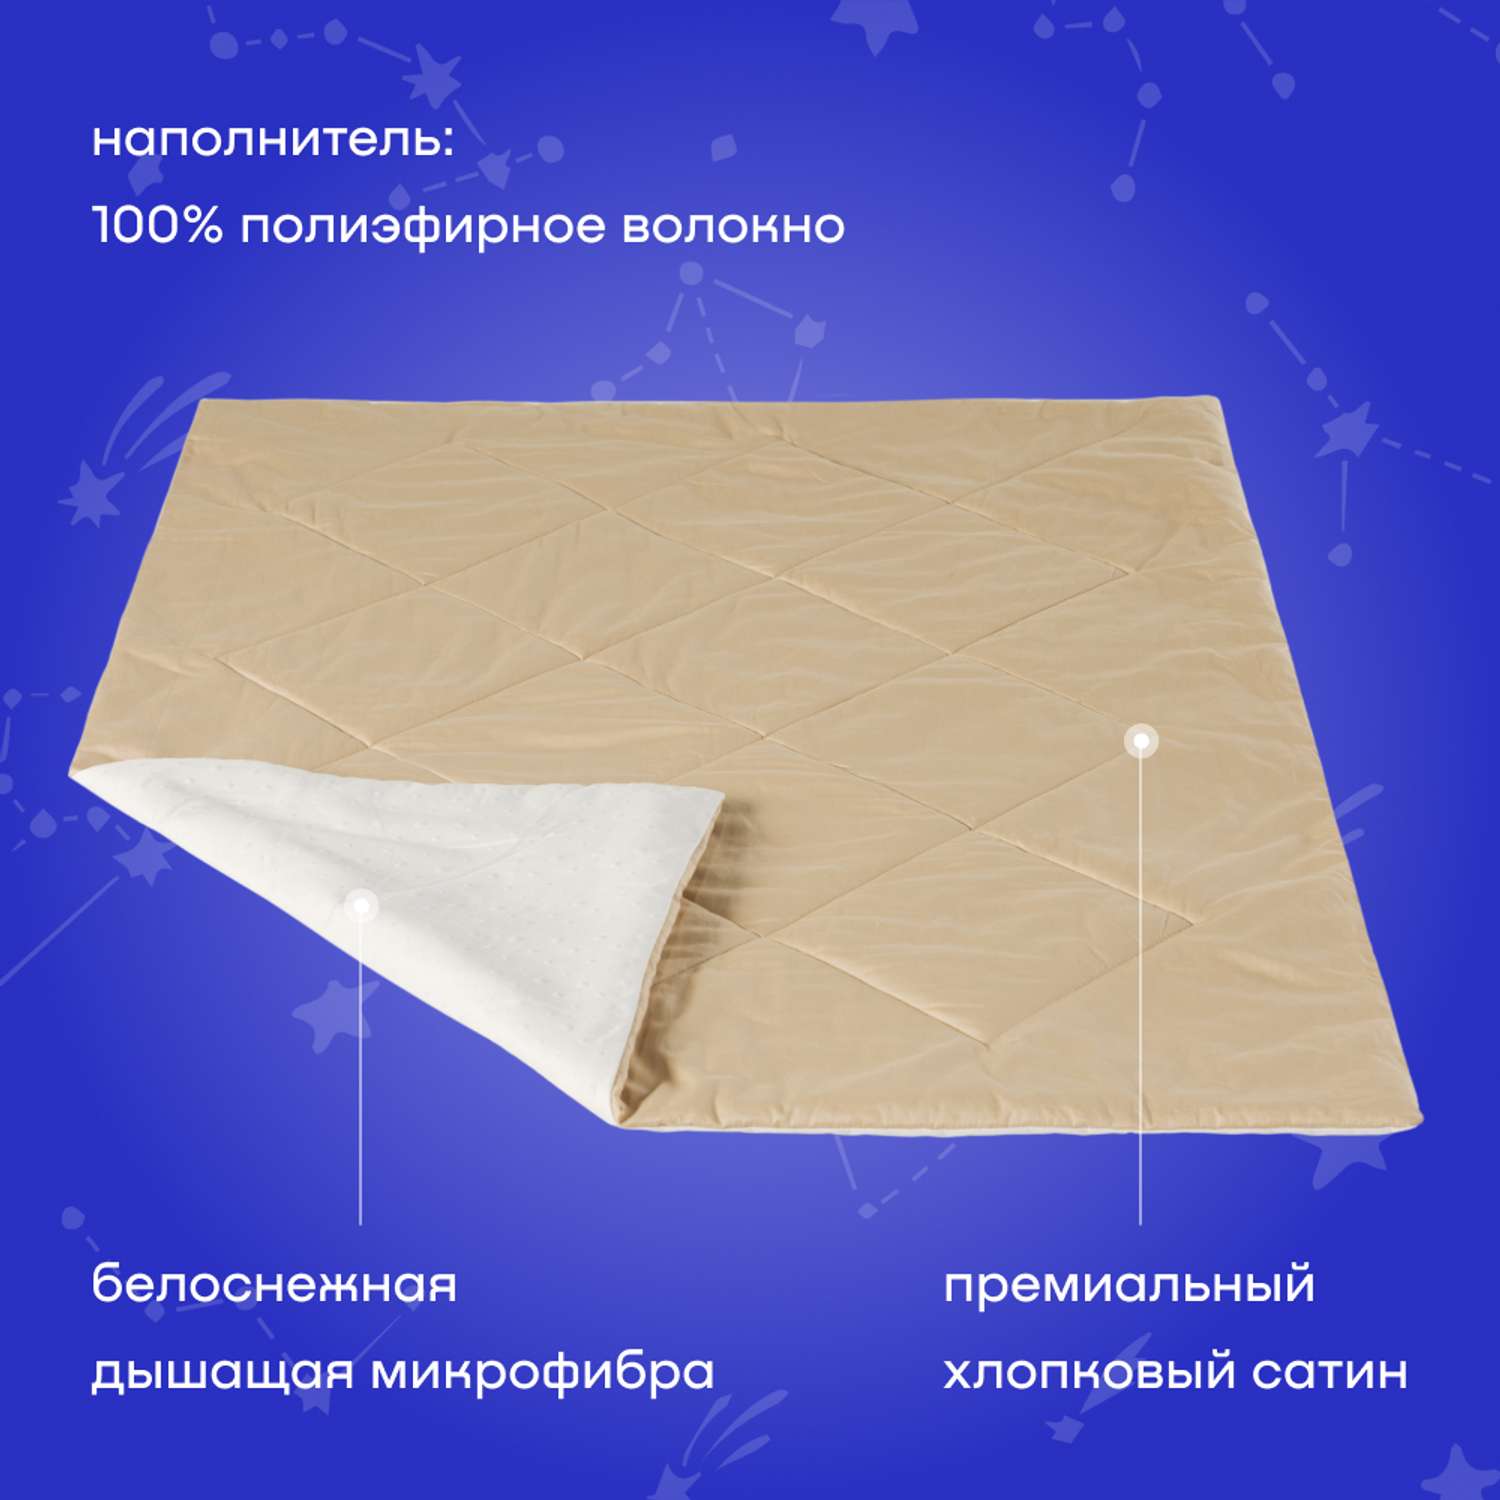 Одеяло buyson BuyMini 140х105 см полиэфирное волокно золотистое - фото 2